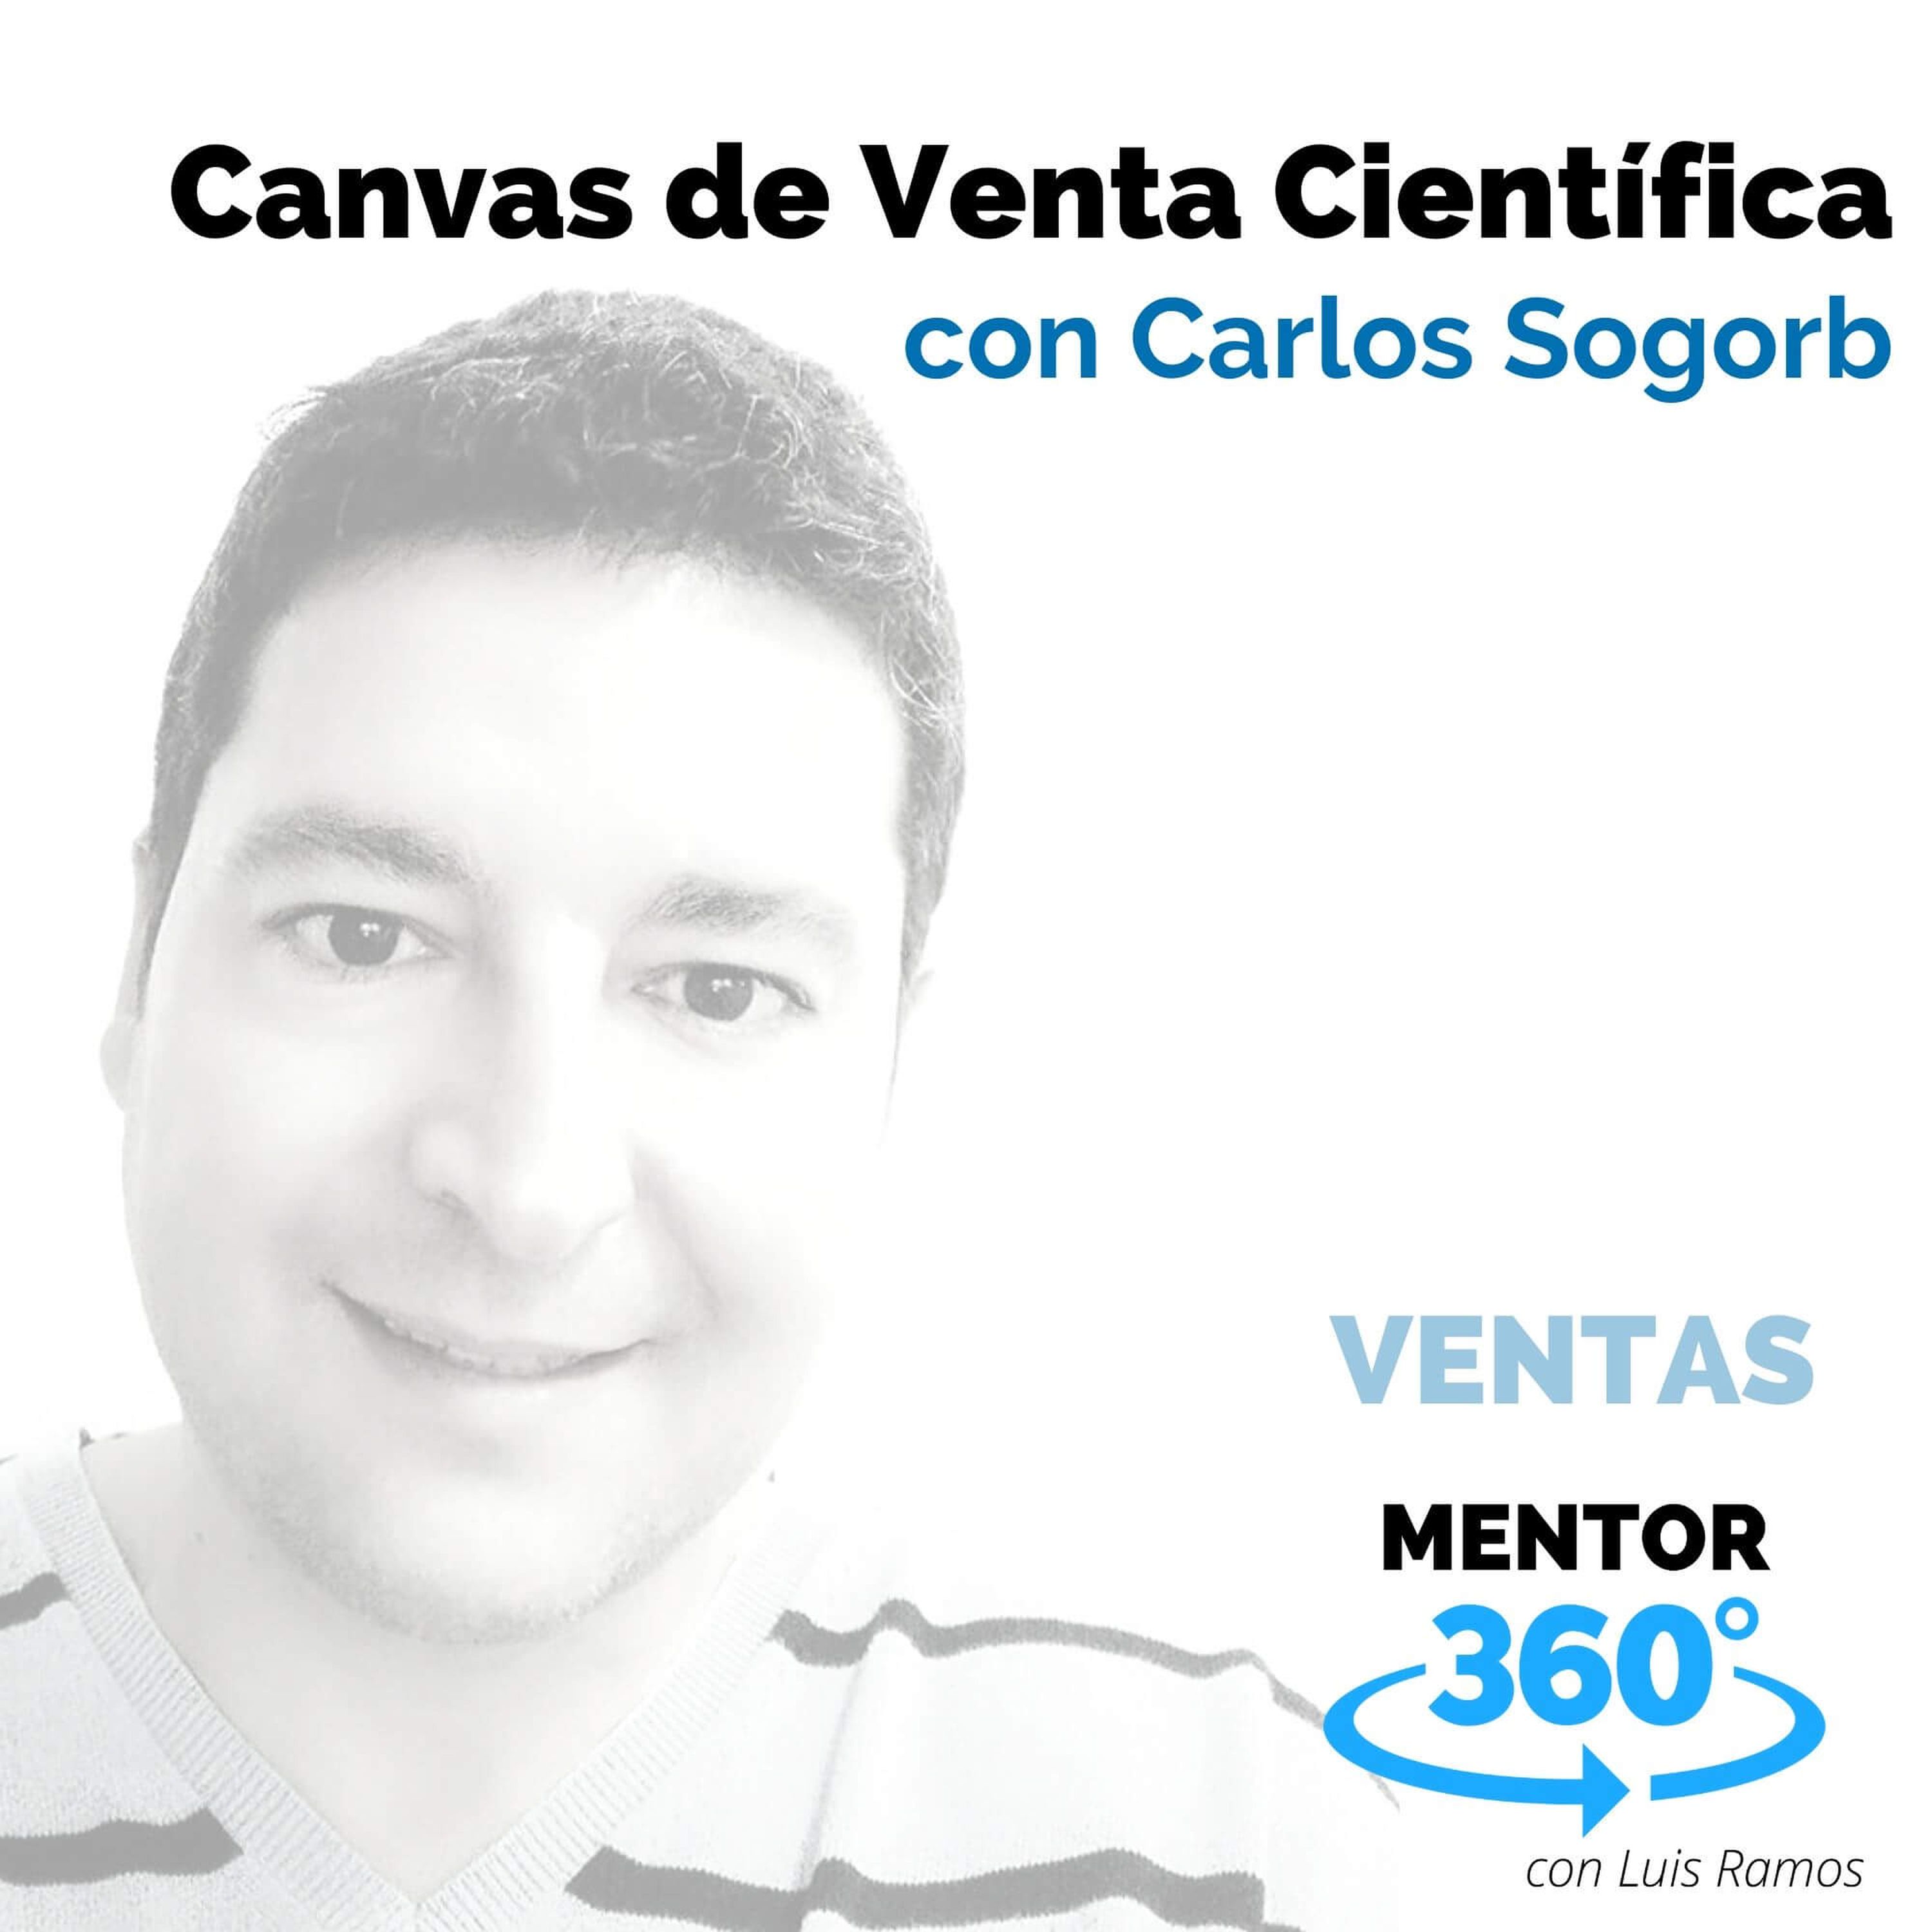 Canvas de Venta Científica, Con Carlos Sogorb - VENTAS - MENTOR360